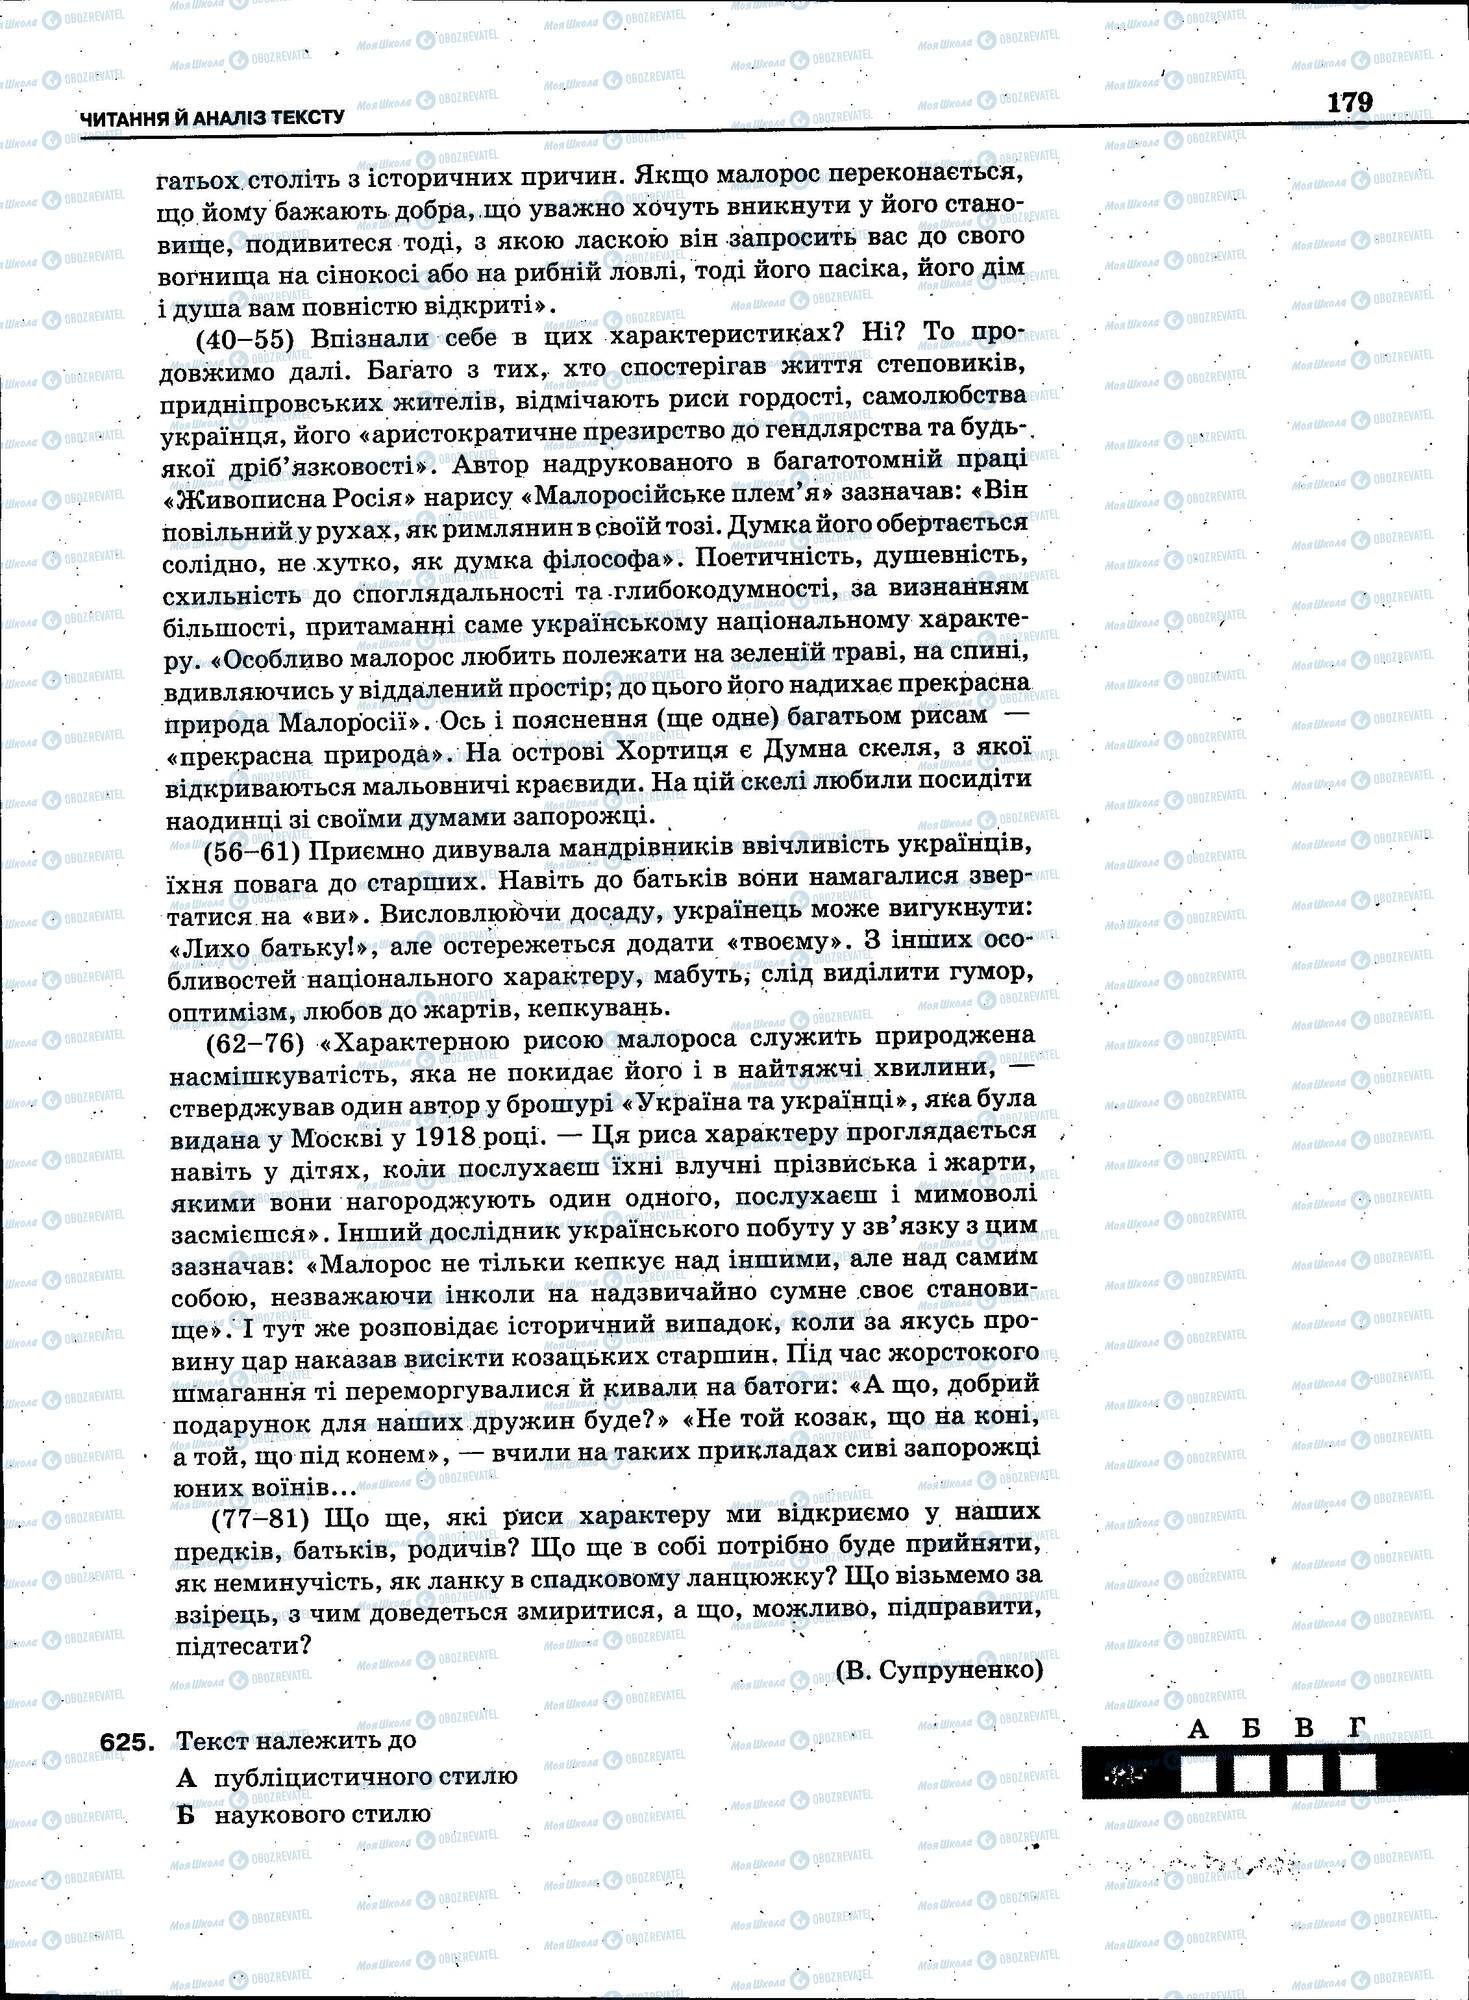 ЗНО Укр мова 11 класс страница 179